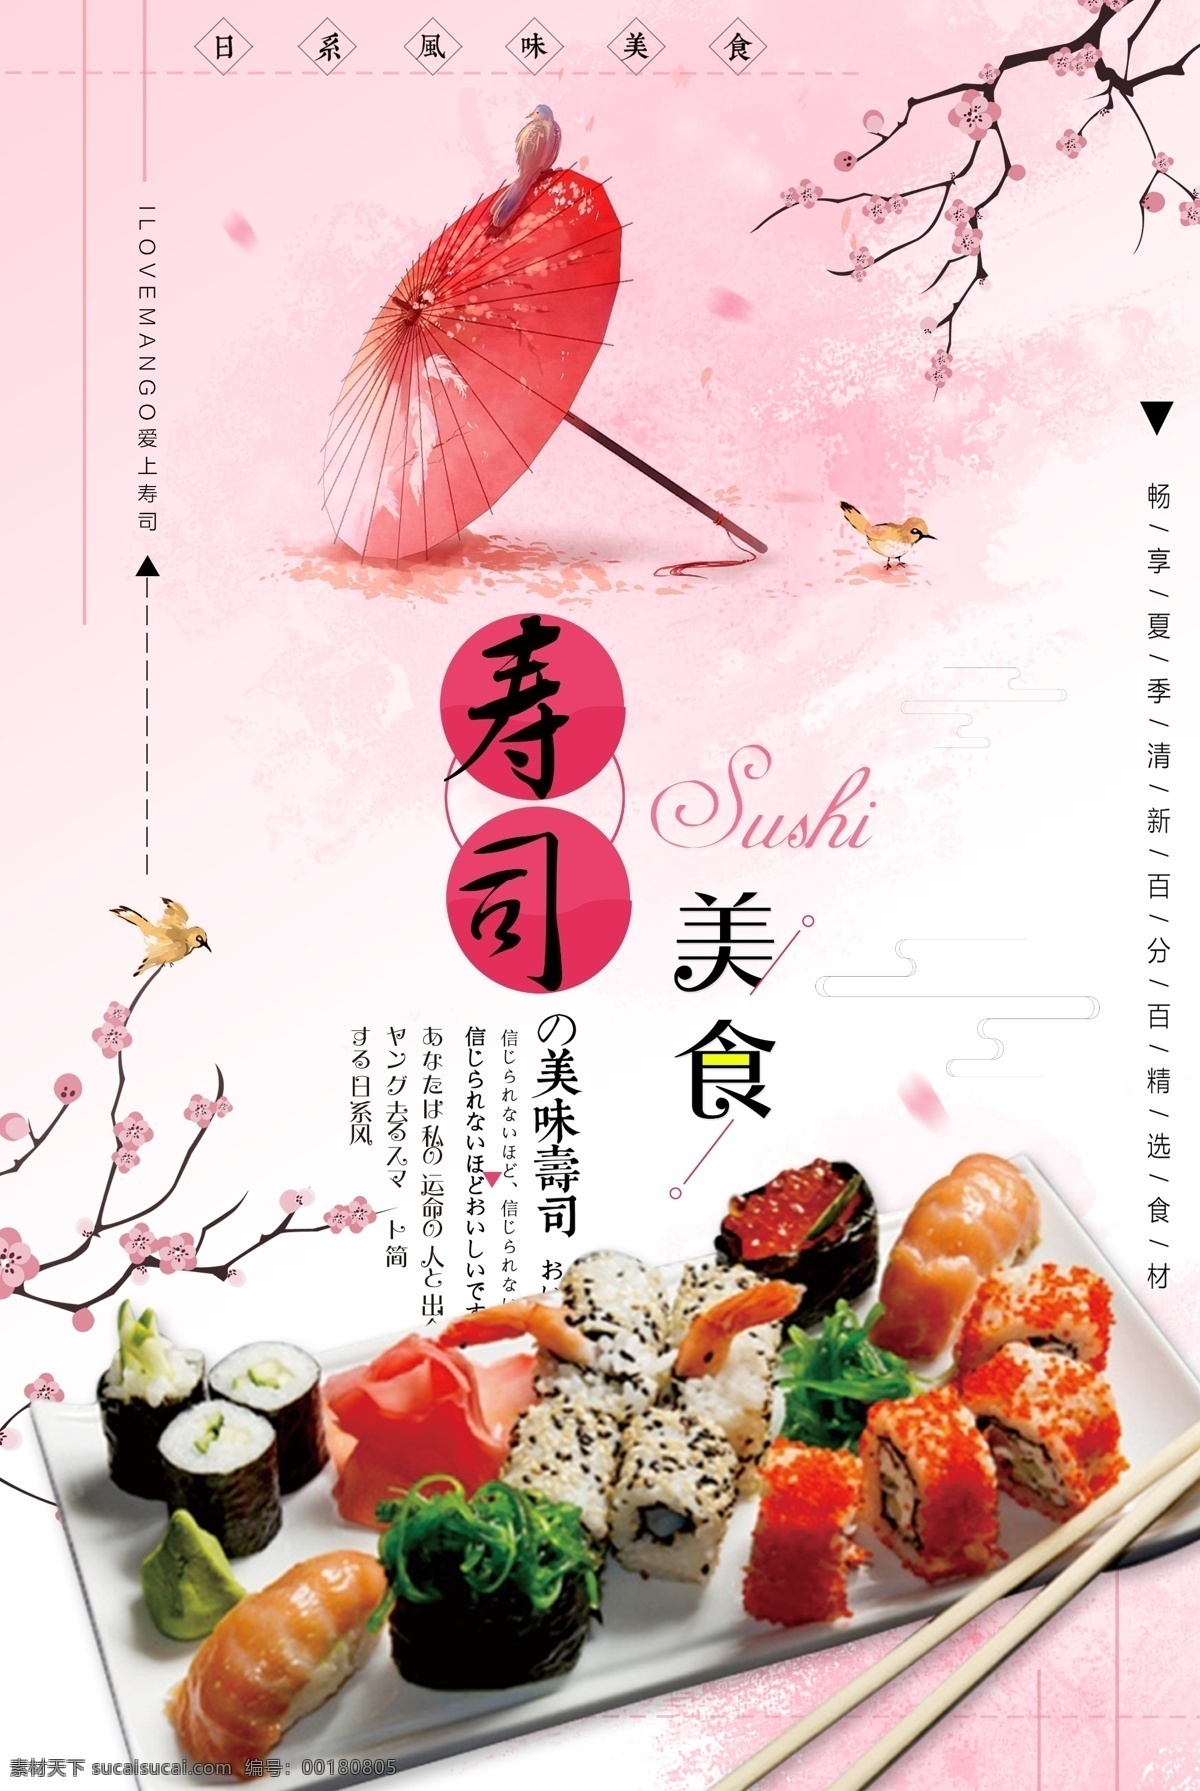 简约 日本 寿司 海报 模版 日本料理 美食海报 展板 海报模版 日本寿司 日式餐厅 日本菜 日本寿司图片 日式美食 舌尖上的日本 日式茶馆 日本印象 日式料理 日本料理菜谱